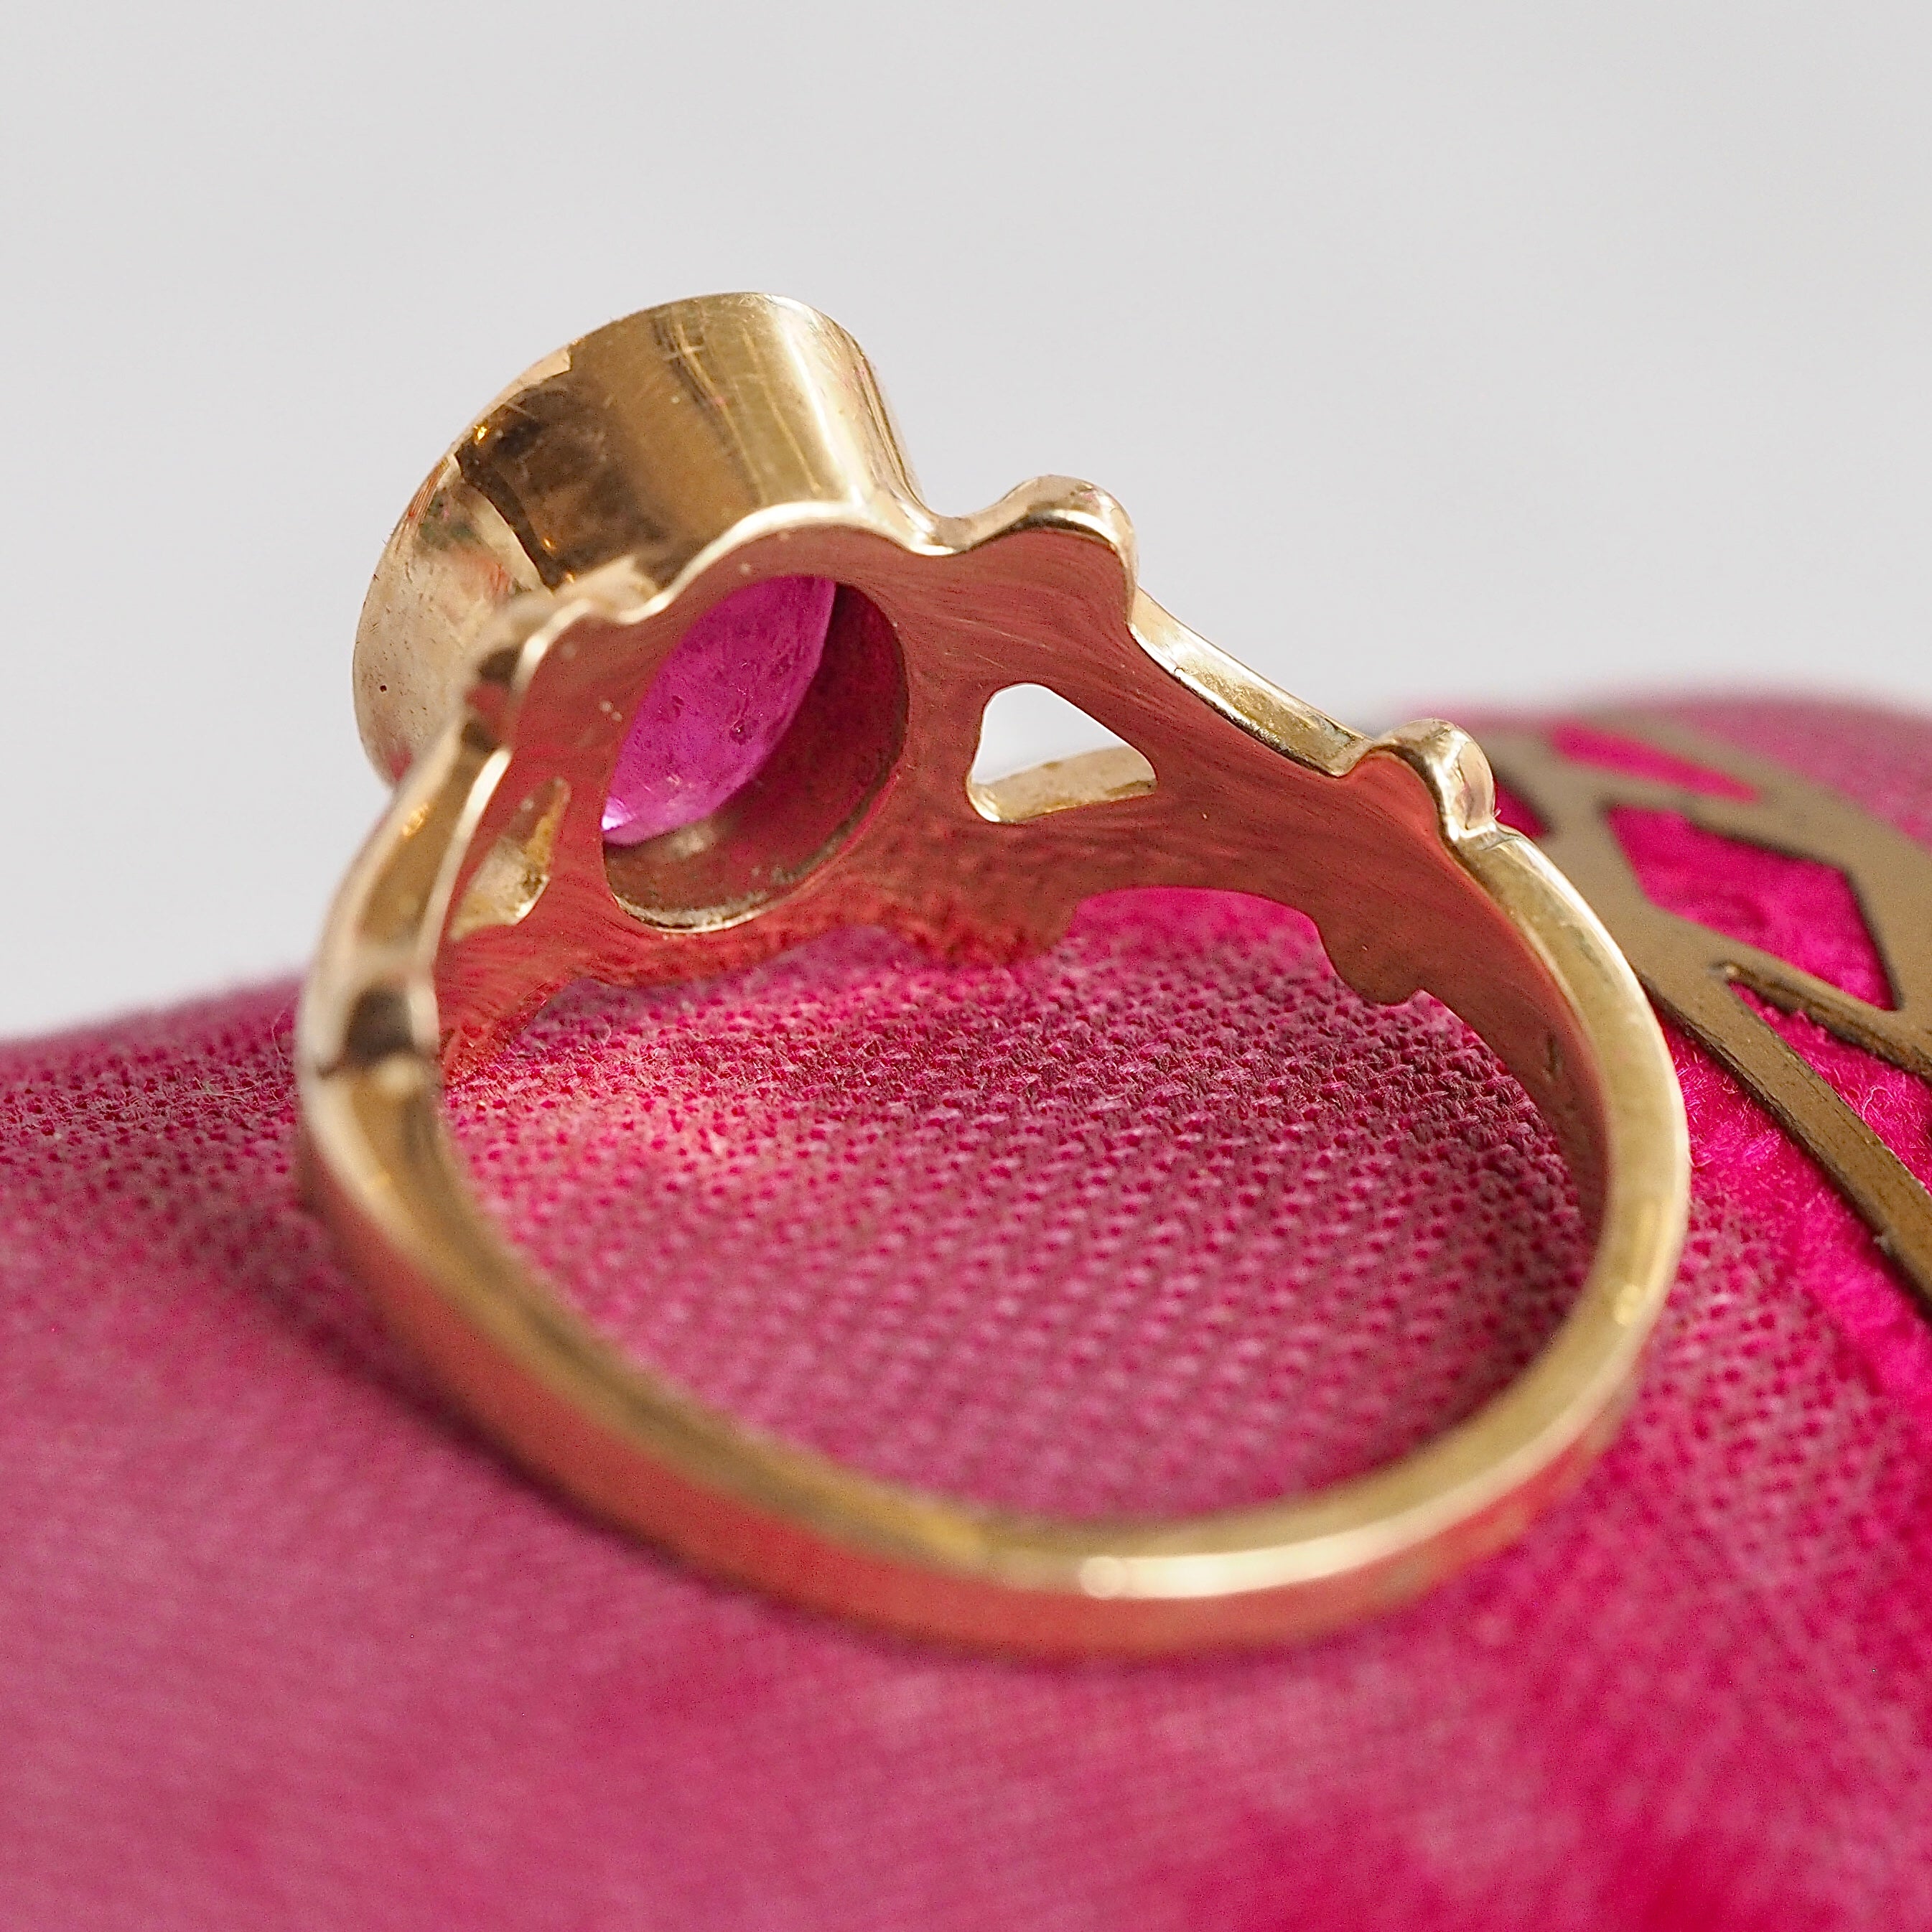 Vintage 14k Gold Natural Ruby Bezel Set Ring